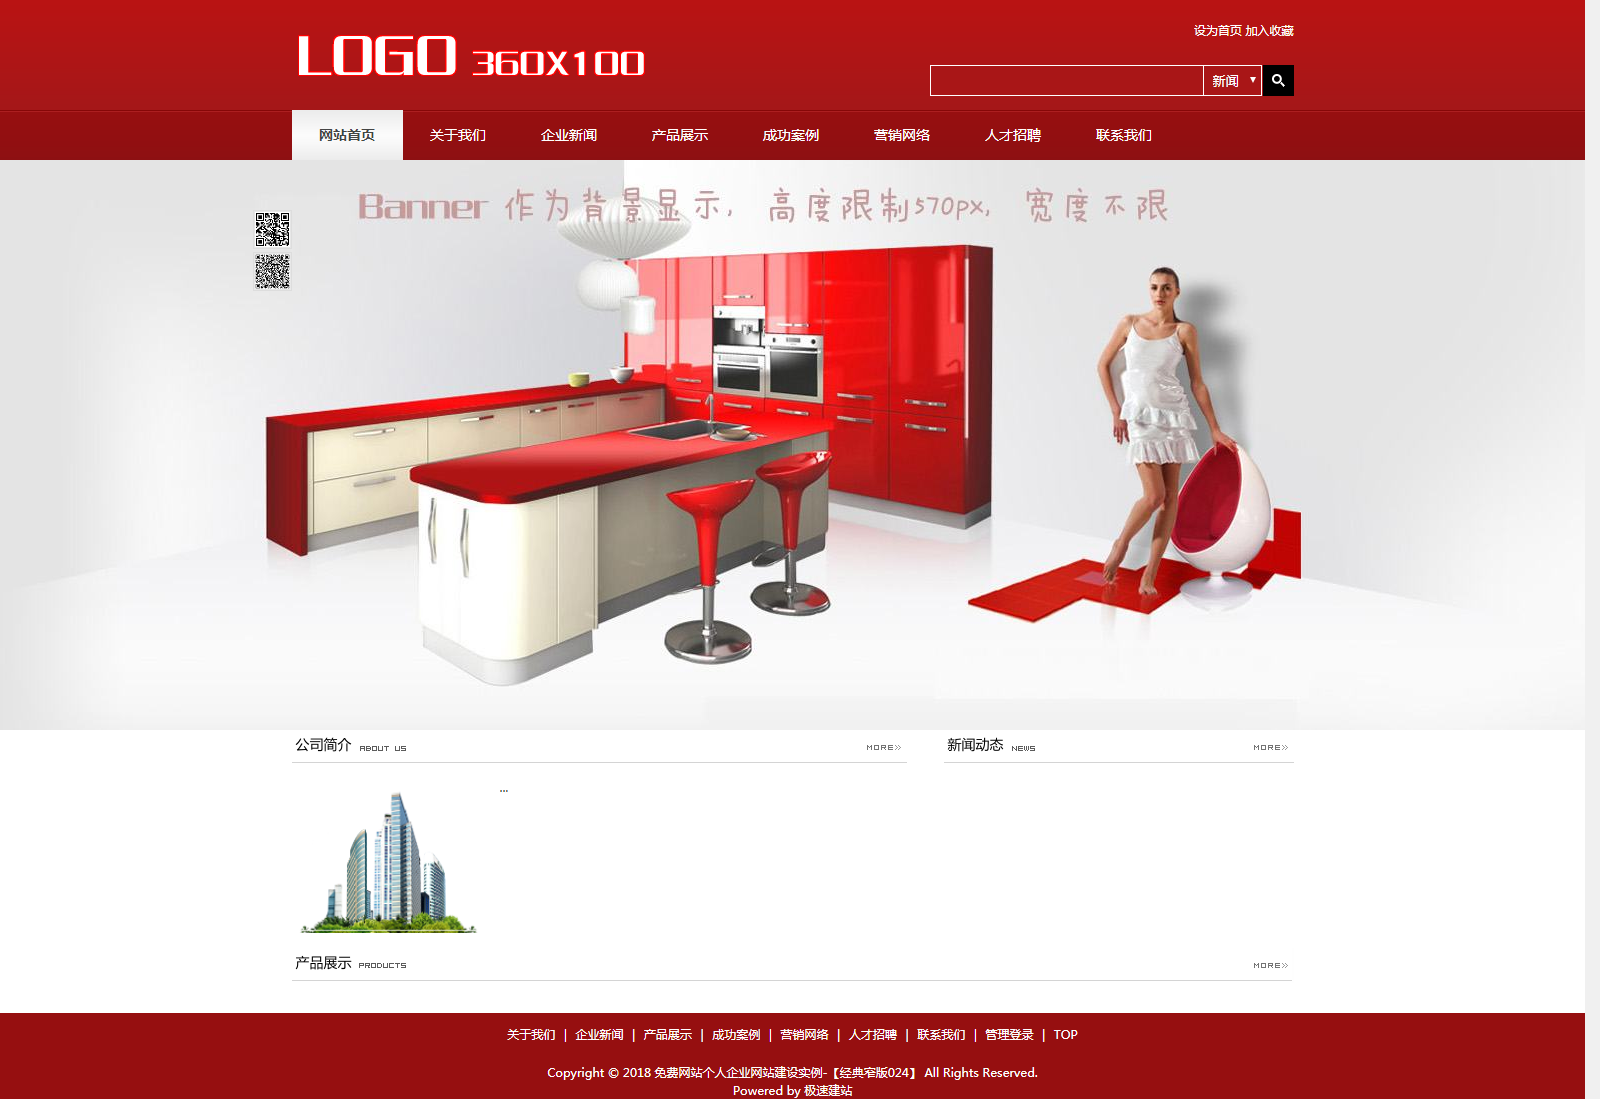 中国红经典窄版免费网站个人企业自助建站模板-024#网站建设 (1).png